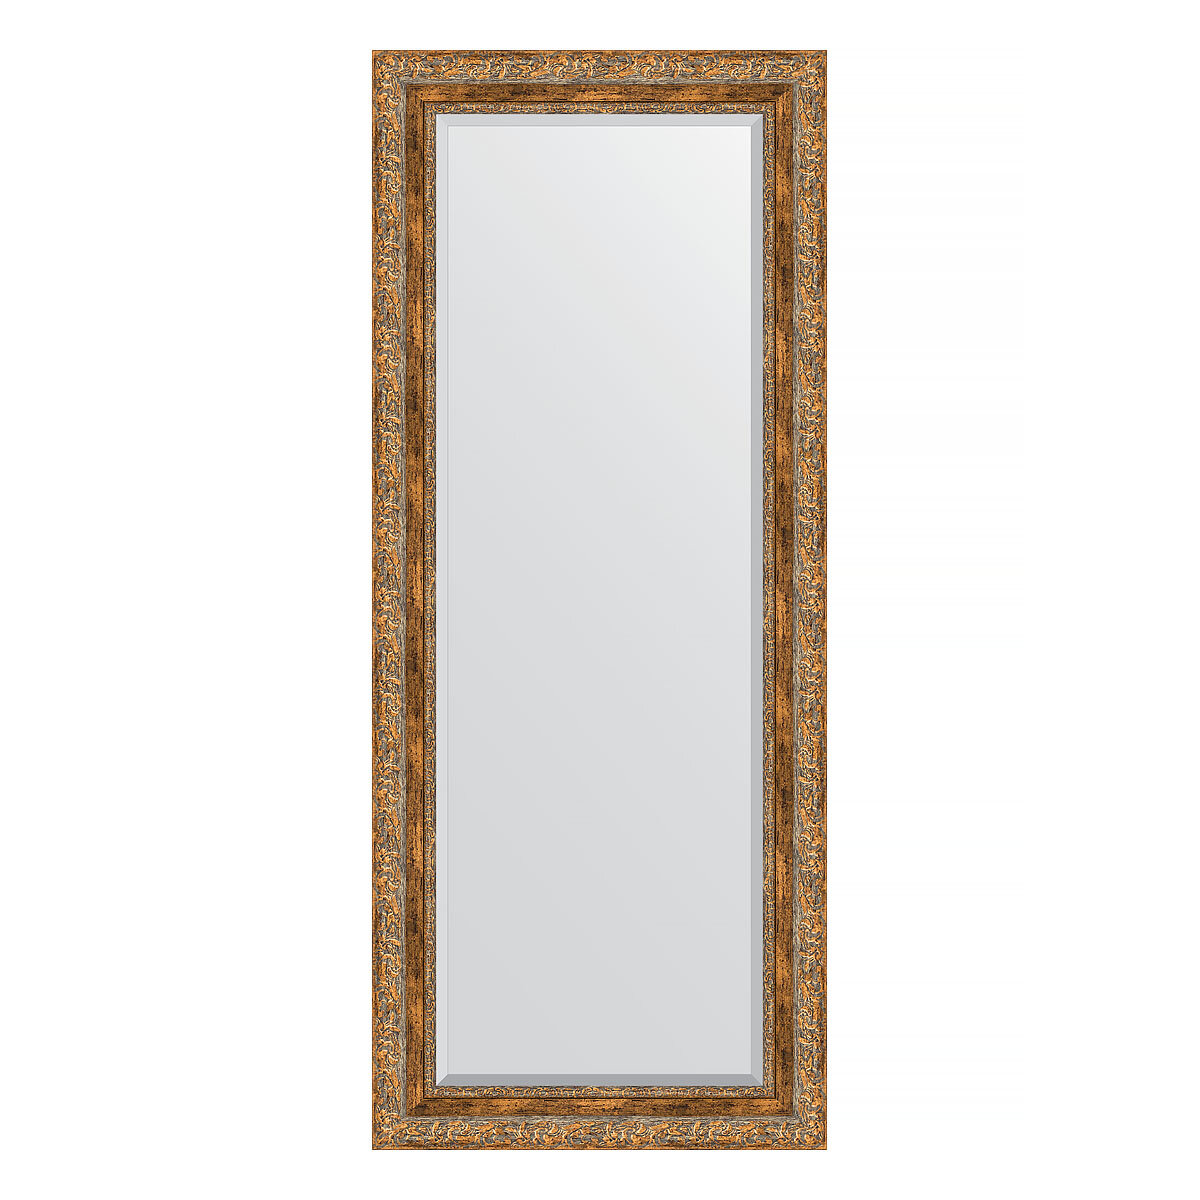 Зеркало настенное с фацетом EVOFORM в багетной раме виньетка античная бронза, 60х145 см, для гостиной, прихожей, спальни и ванной комнаты, BY 3540